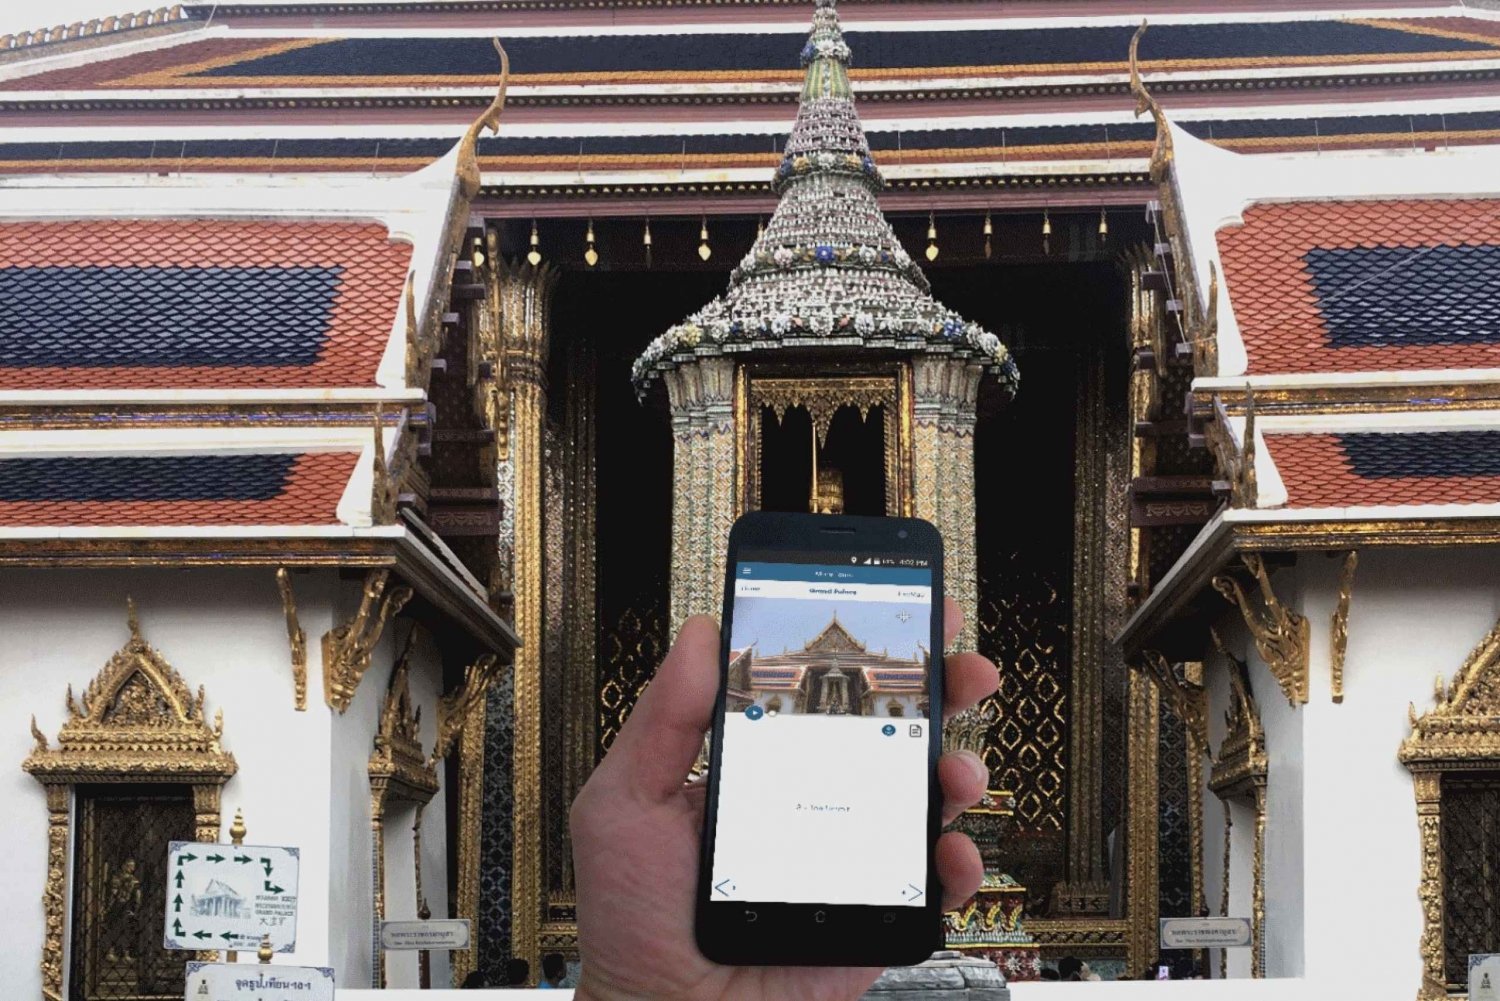 Bangkok: Excursão guiada a pé pelo Grand Palace